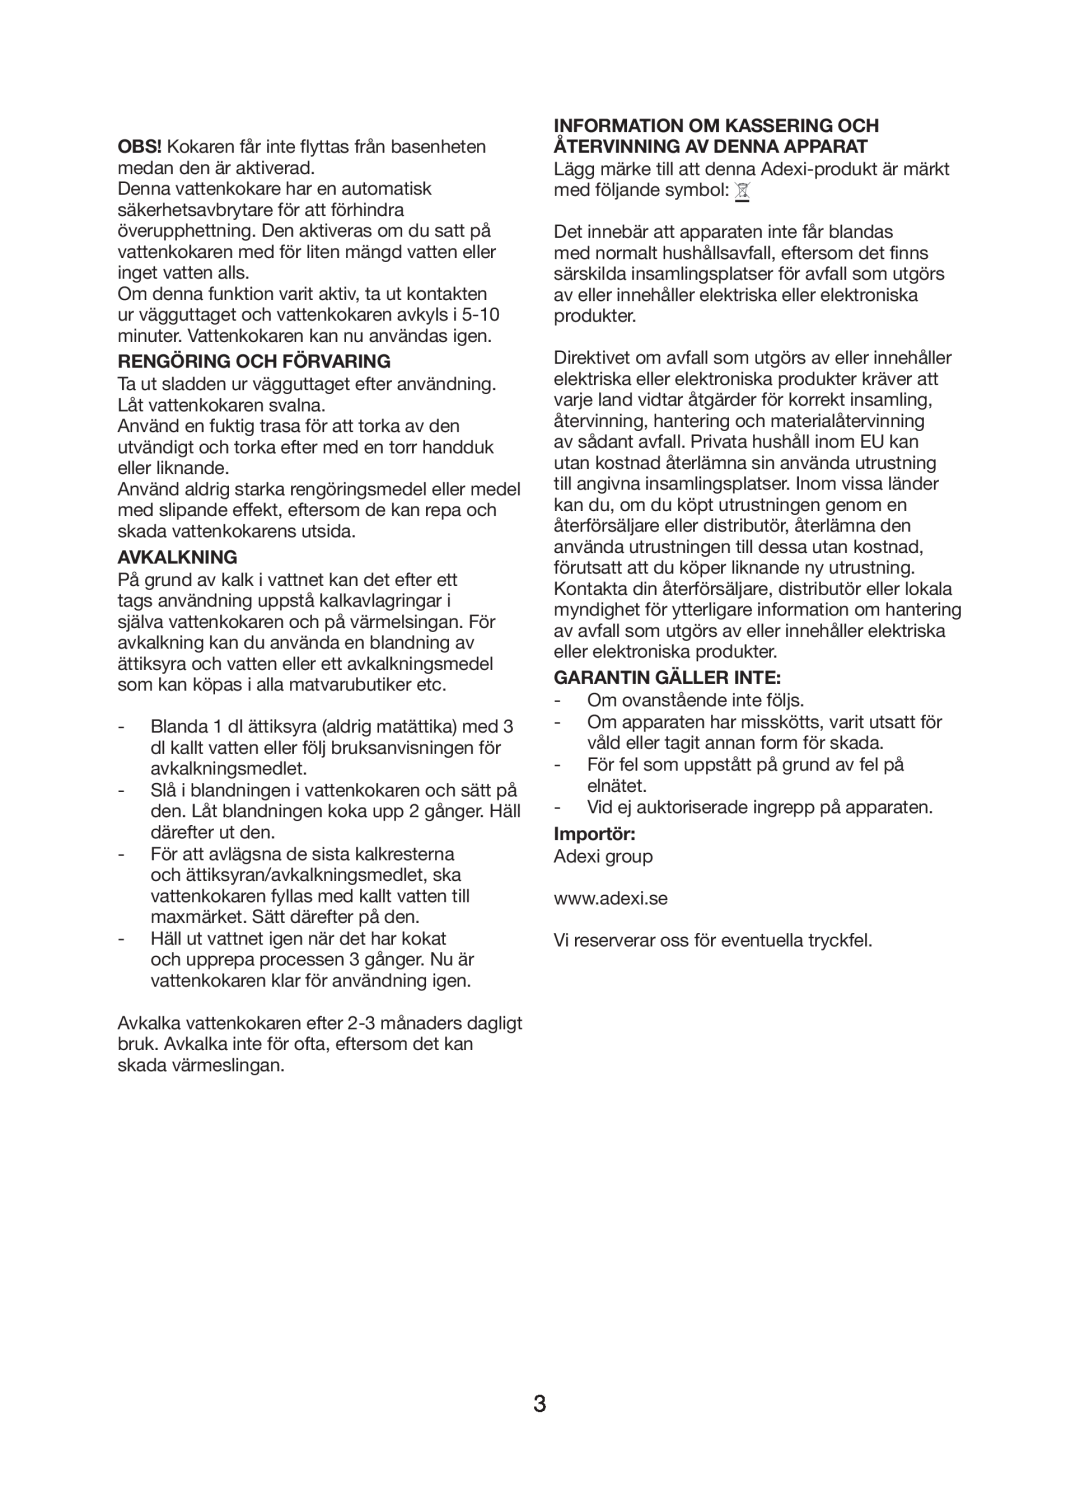 Melissa 745-188 manual Rengöring Och Förvaring, Avkalkning, Garantin Gäller Inte, Importör 